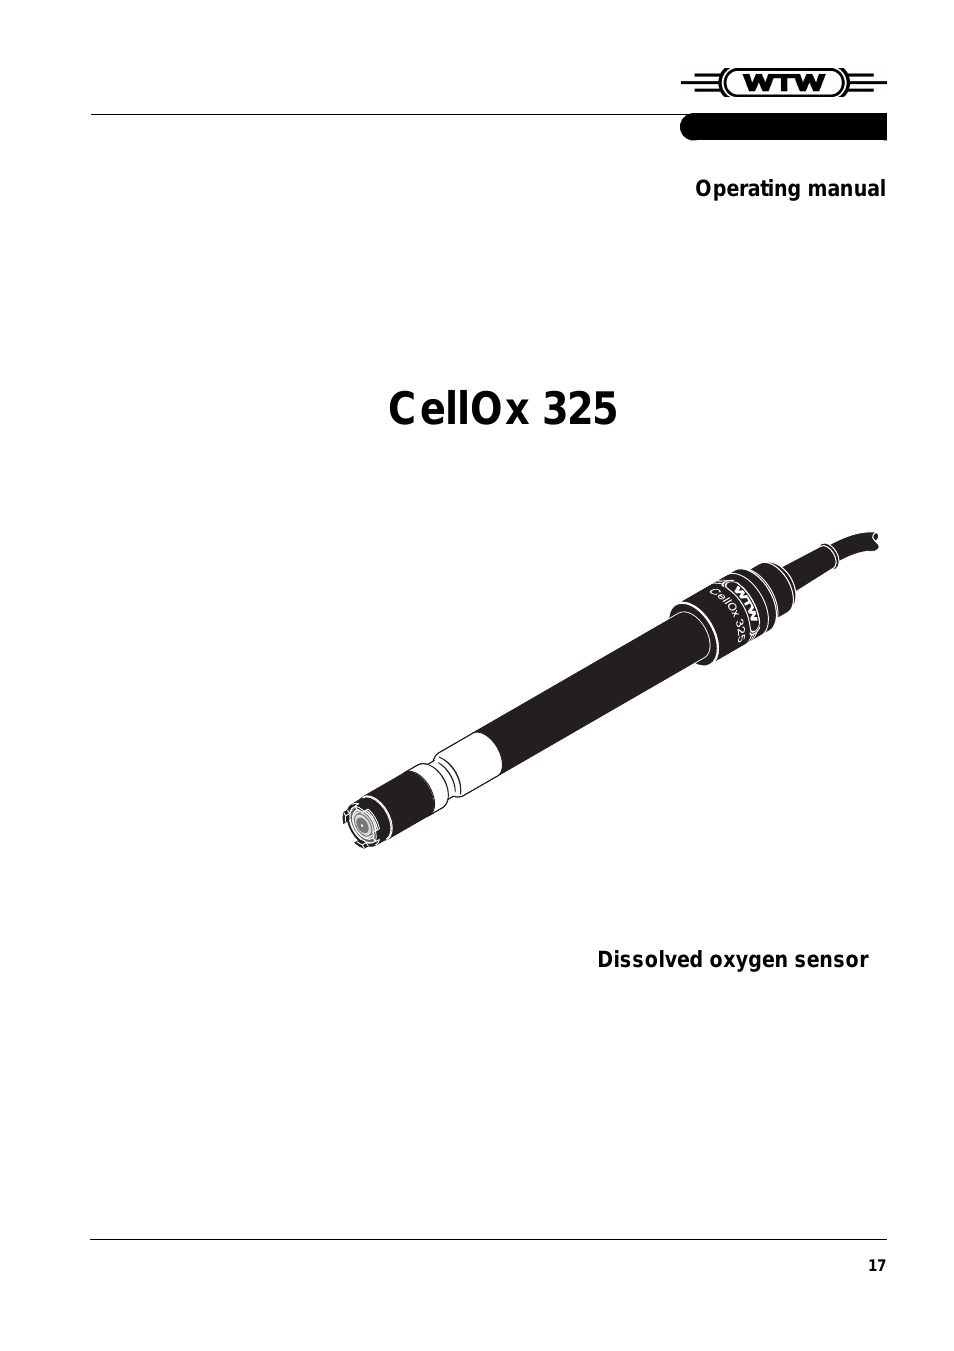 CellOx 325 Dissolved oxygen sensor